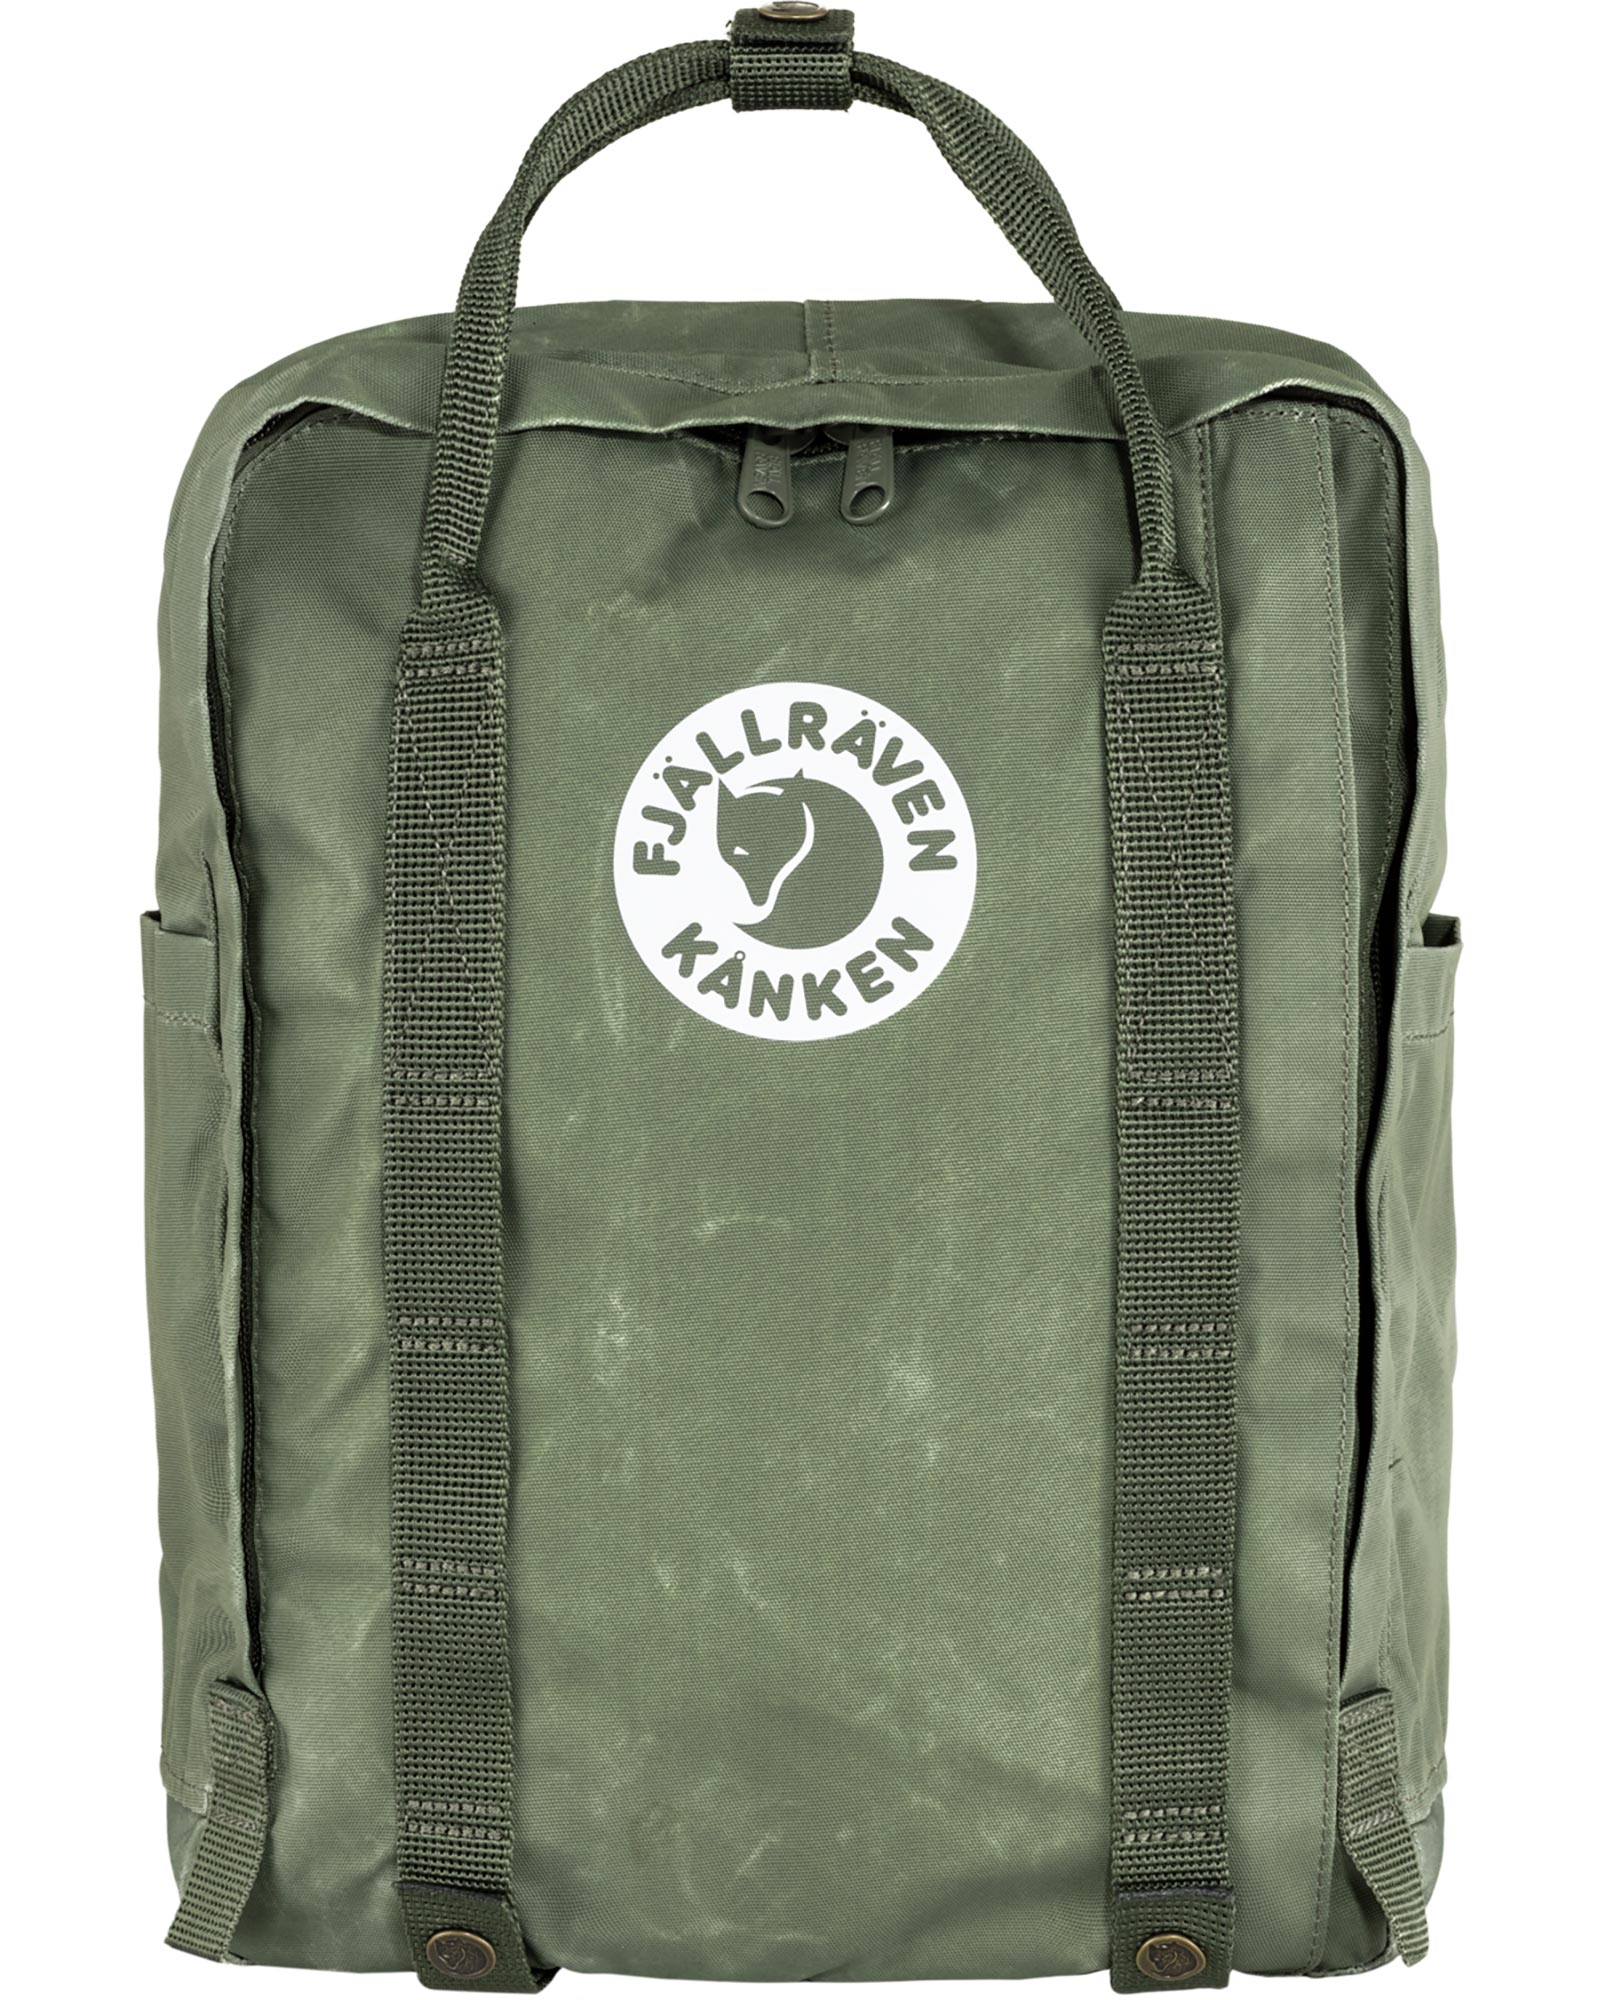 Product image of FjÃ¤llrÃ¤ven Tree-KÃ¥nken Backpack